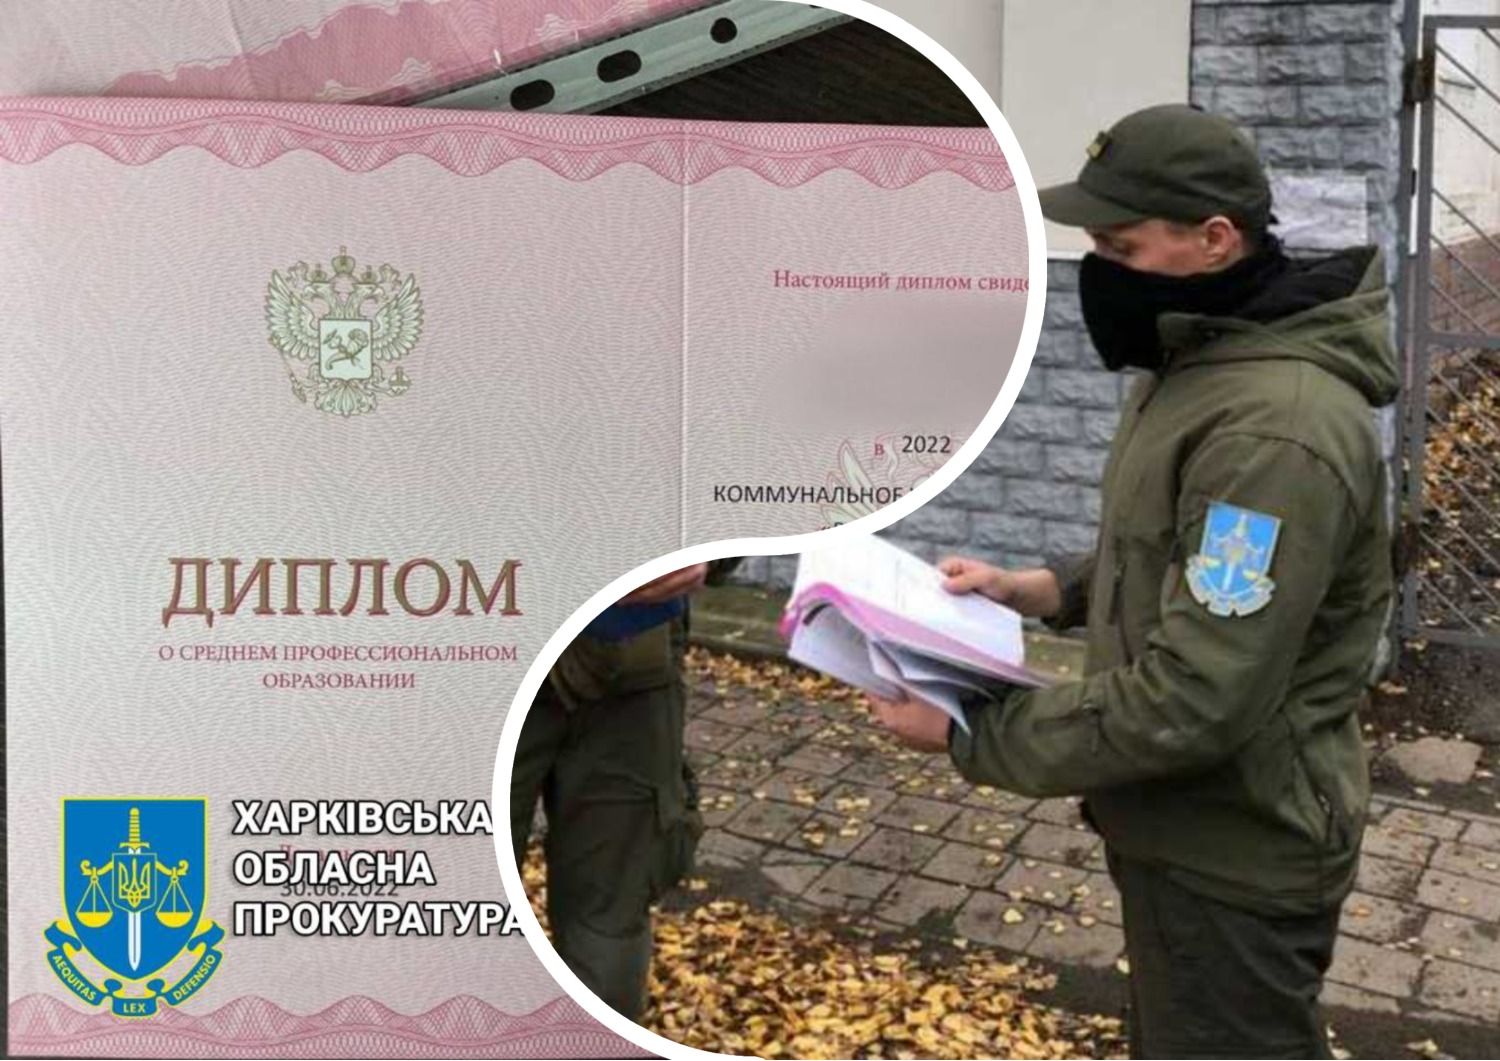 Образование в оккупации - в Харьковской области нашли российские дипломы и зарплату в рублях - 24 канал - Образование